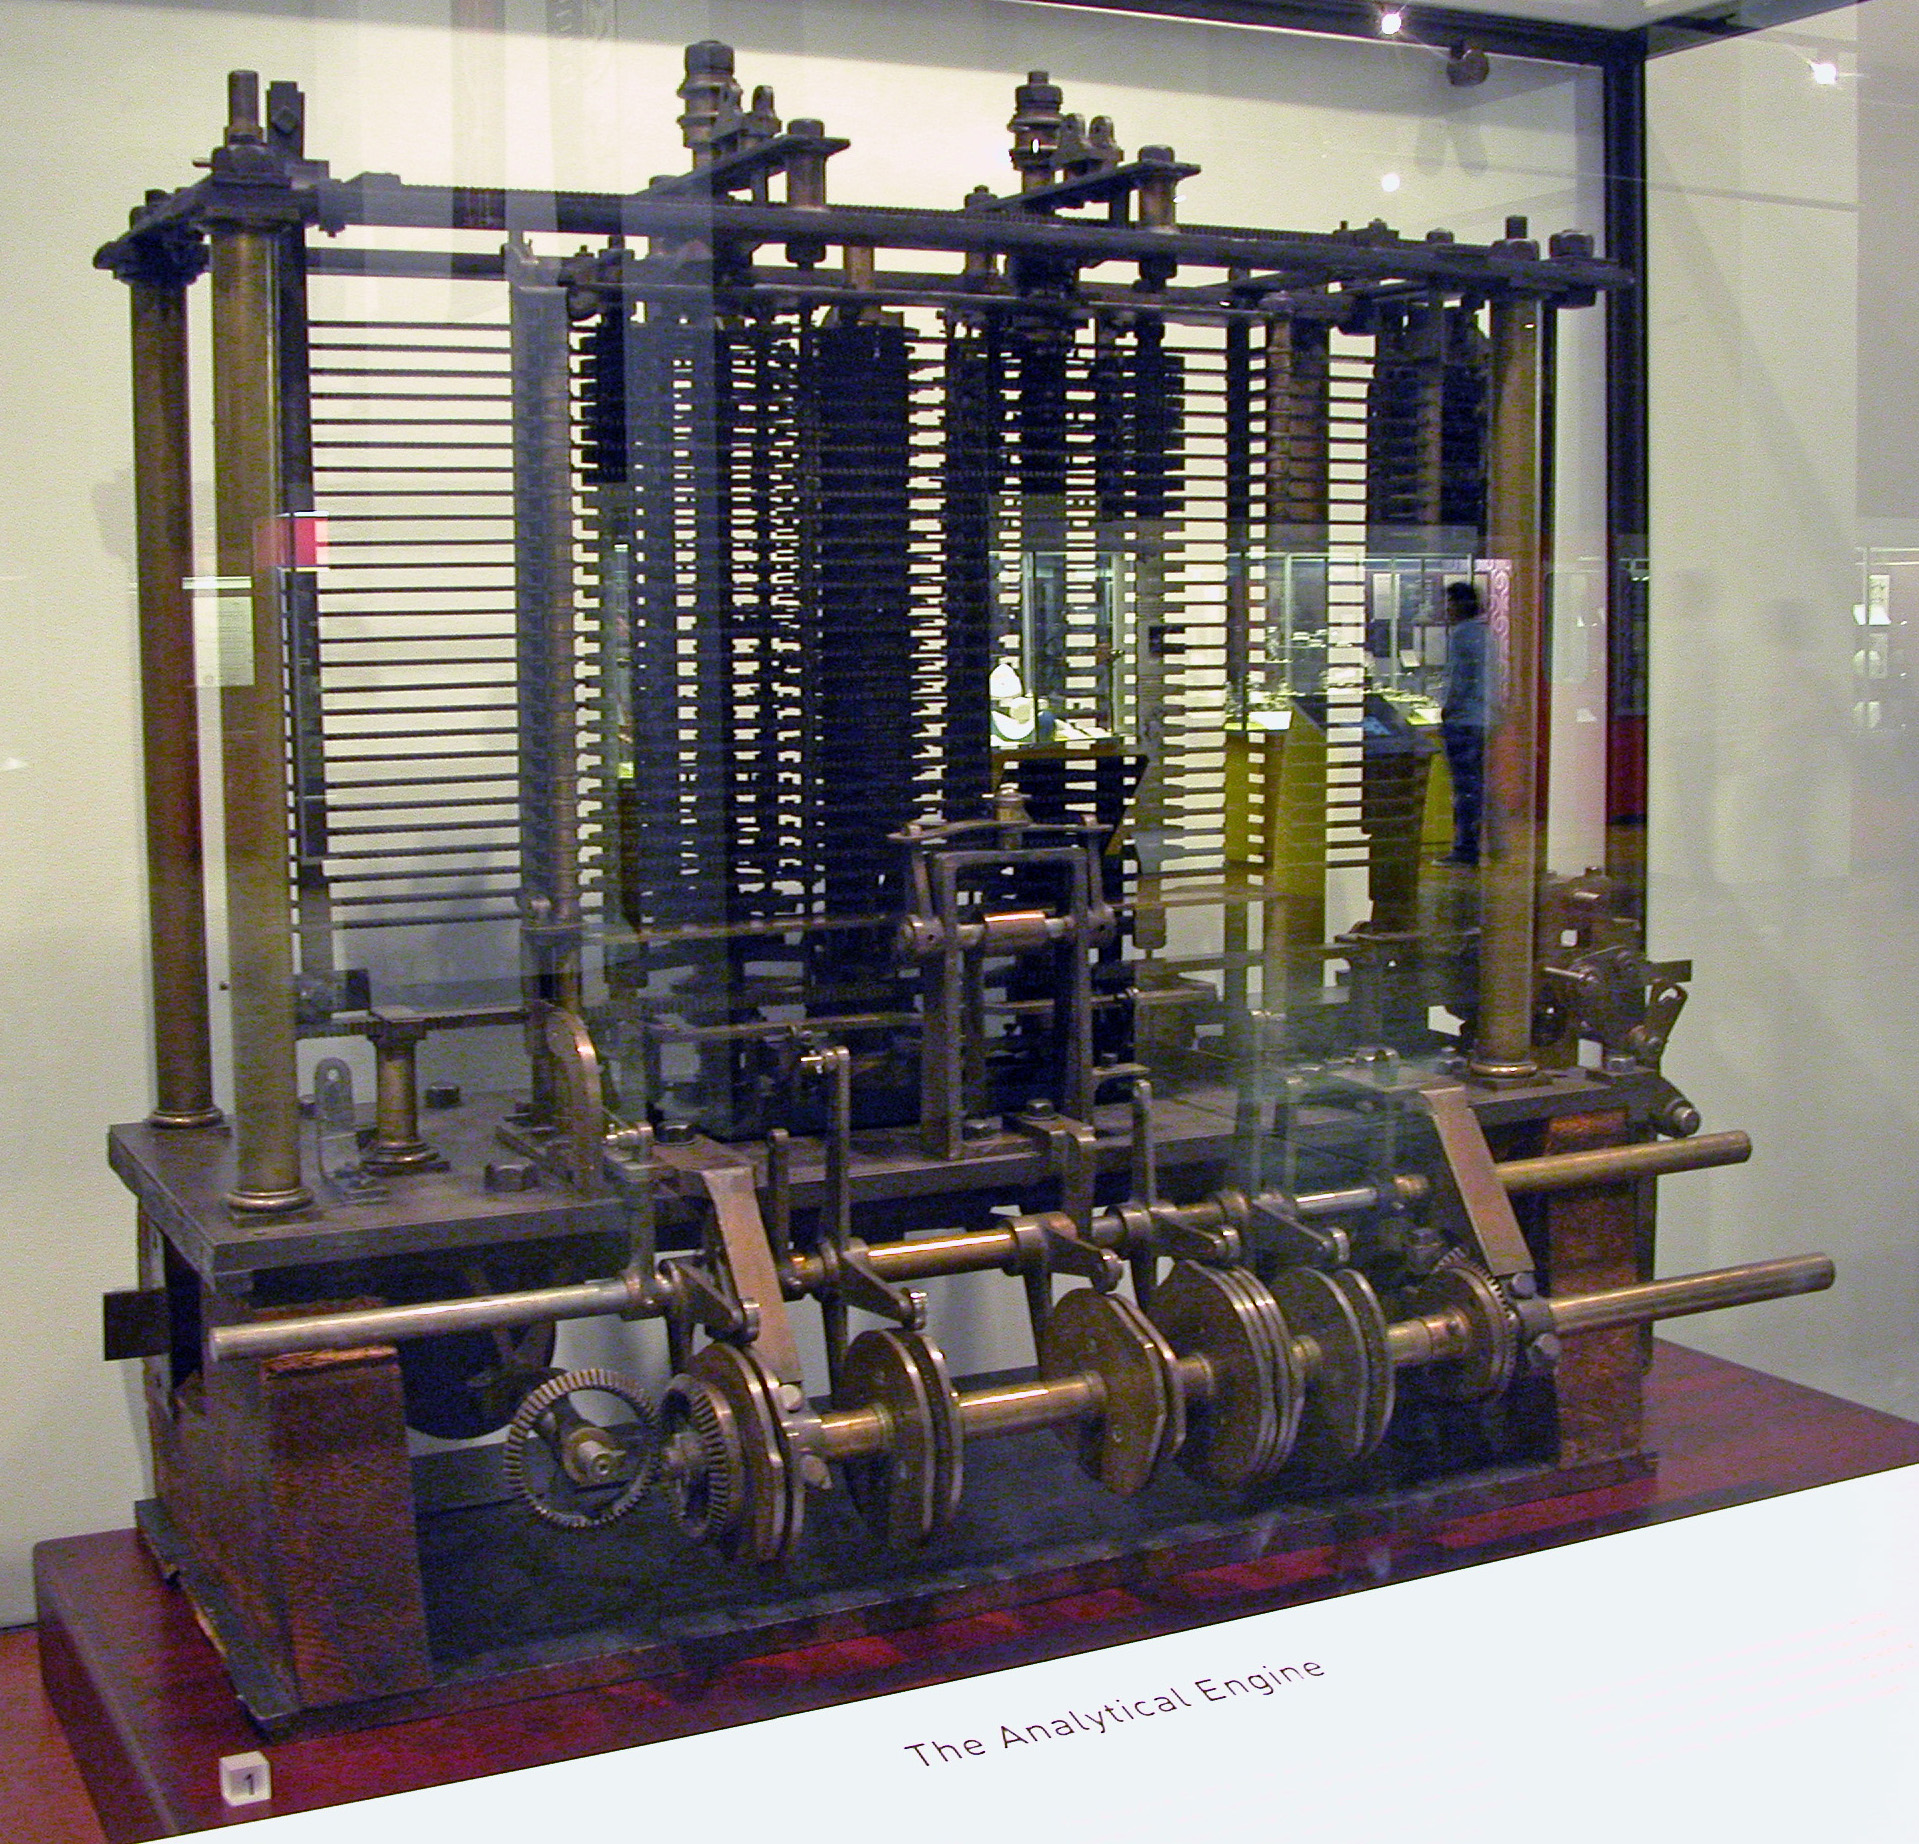 Prototype (1871) non terminé de la machine analytique de Babbage, exposée au 